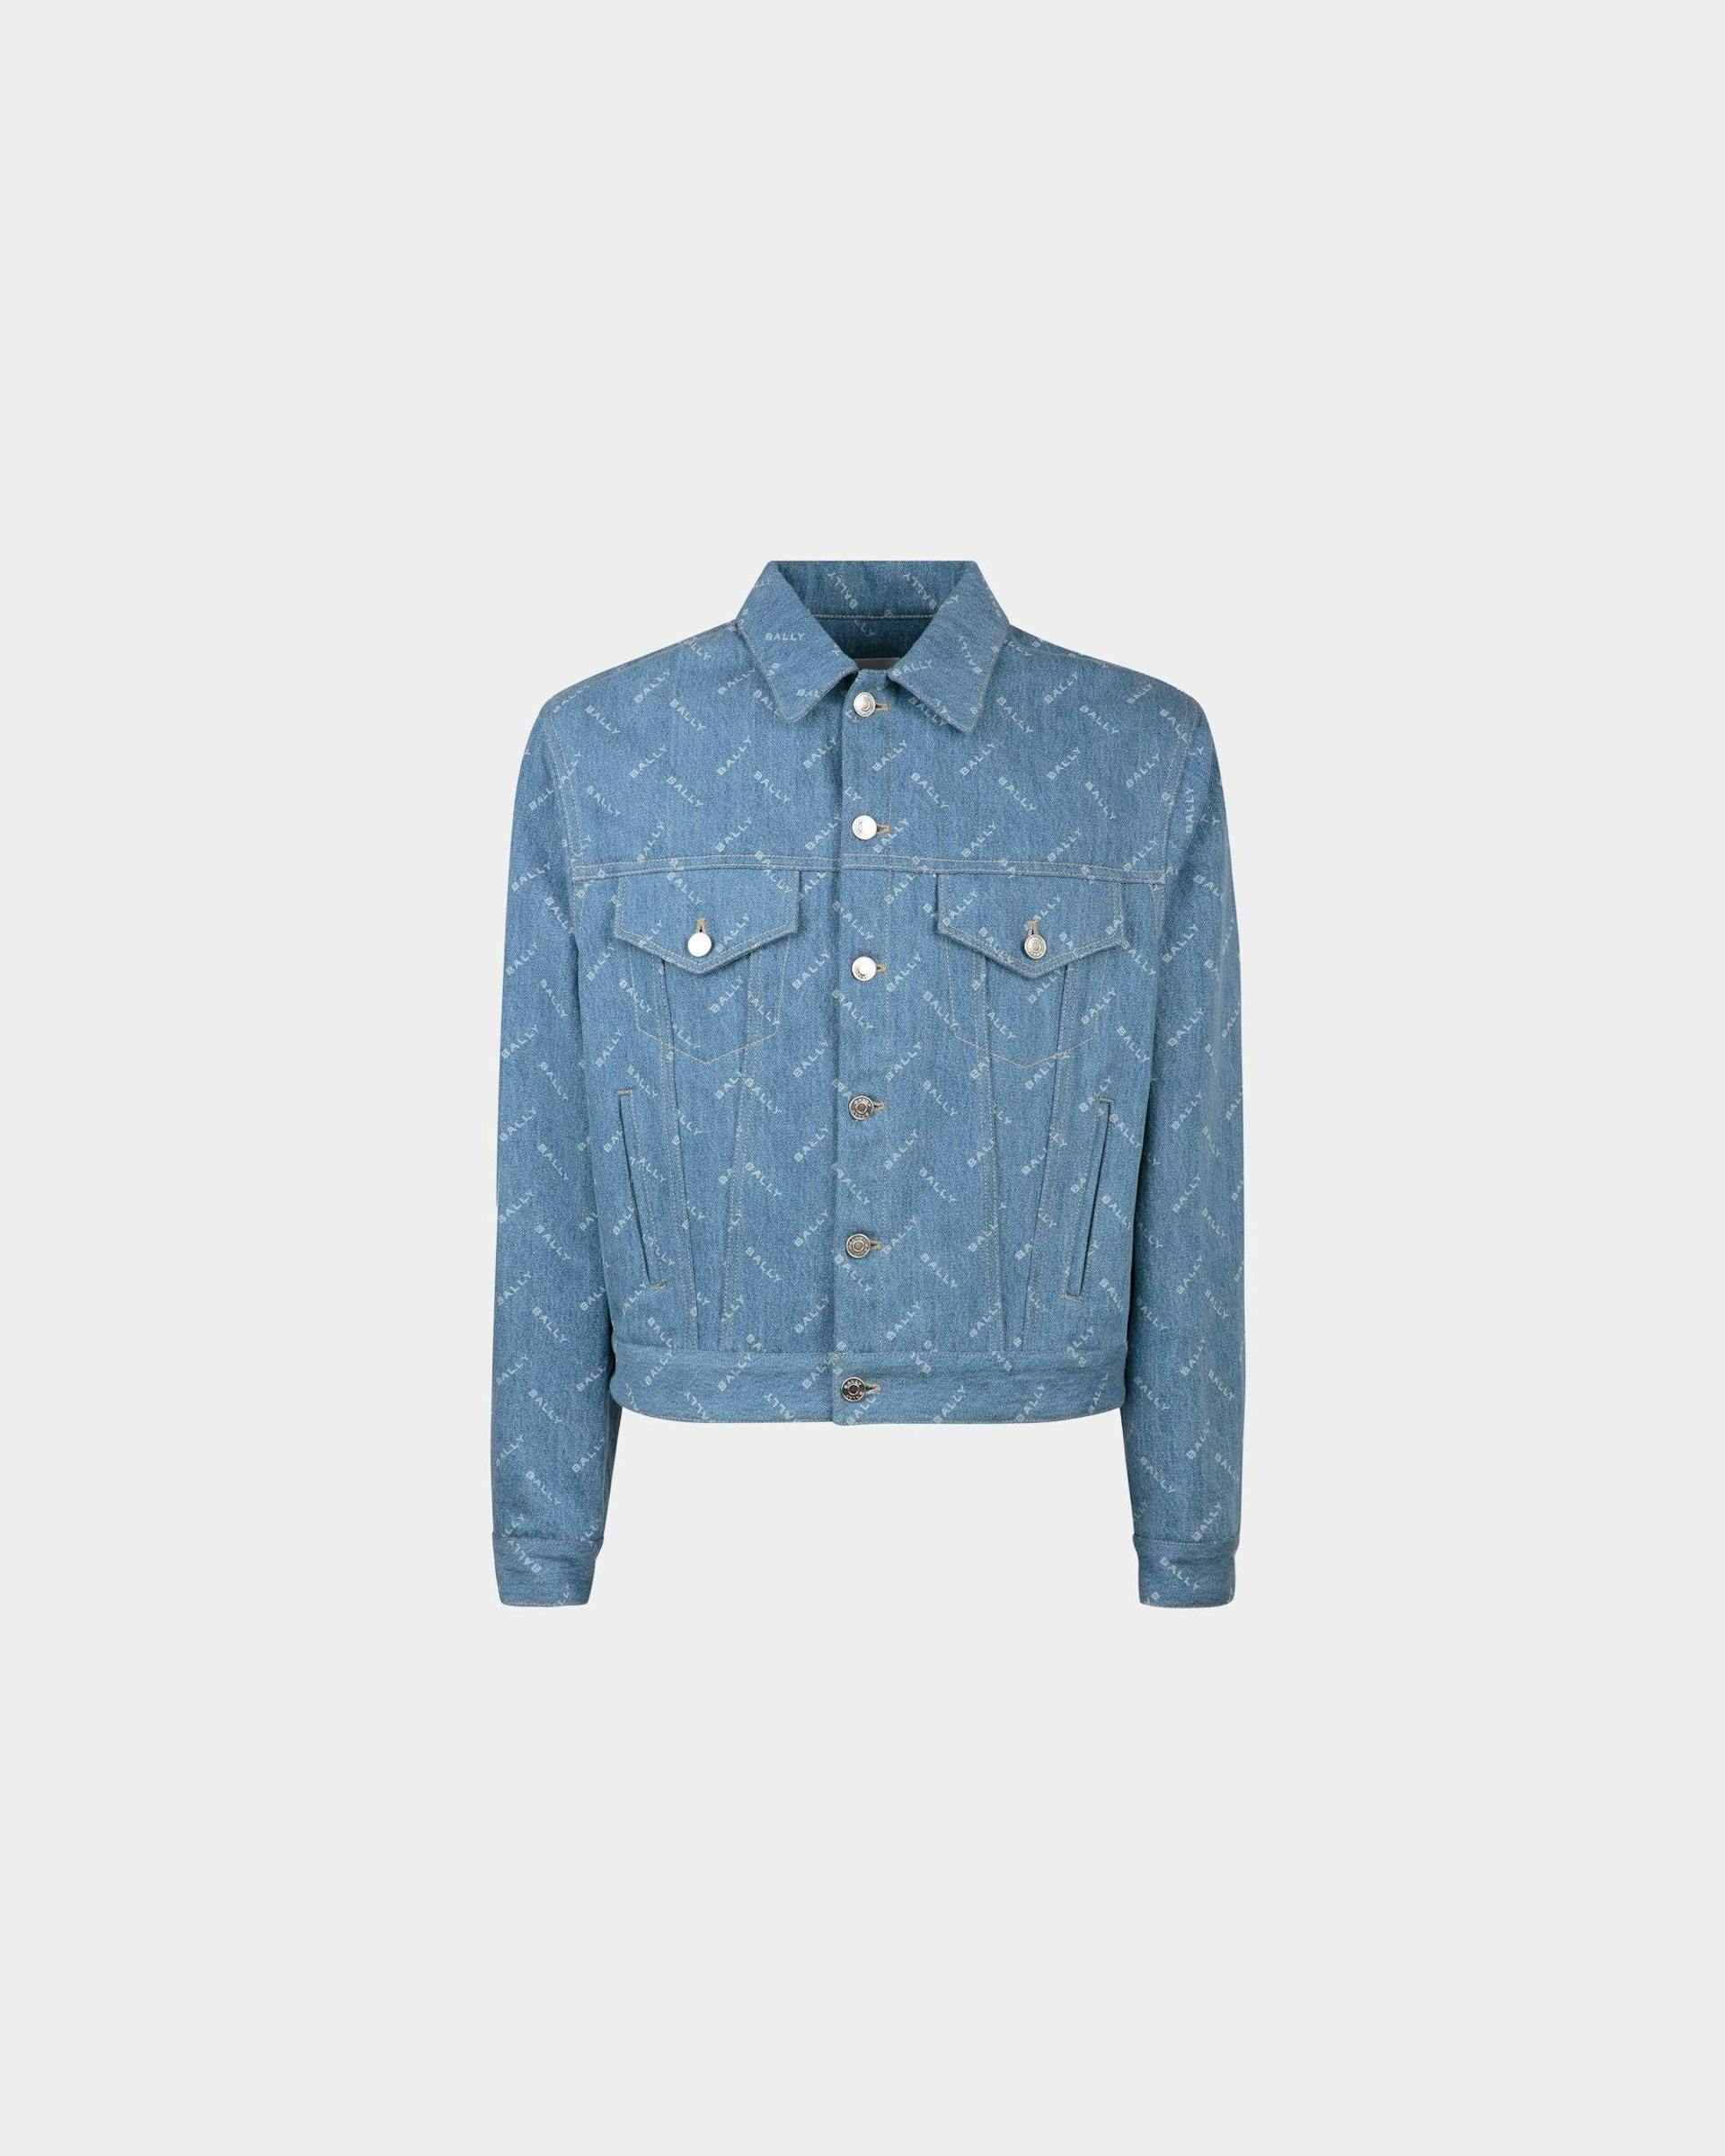 Men's Denim Jacket In Light Blue Cotton | Bally | Still Life Front